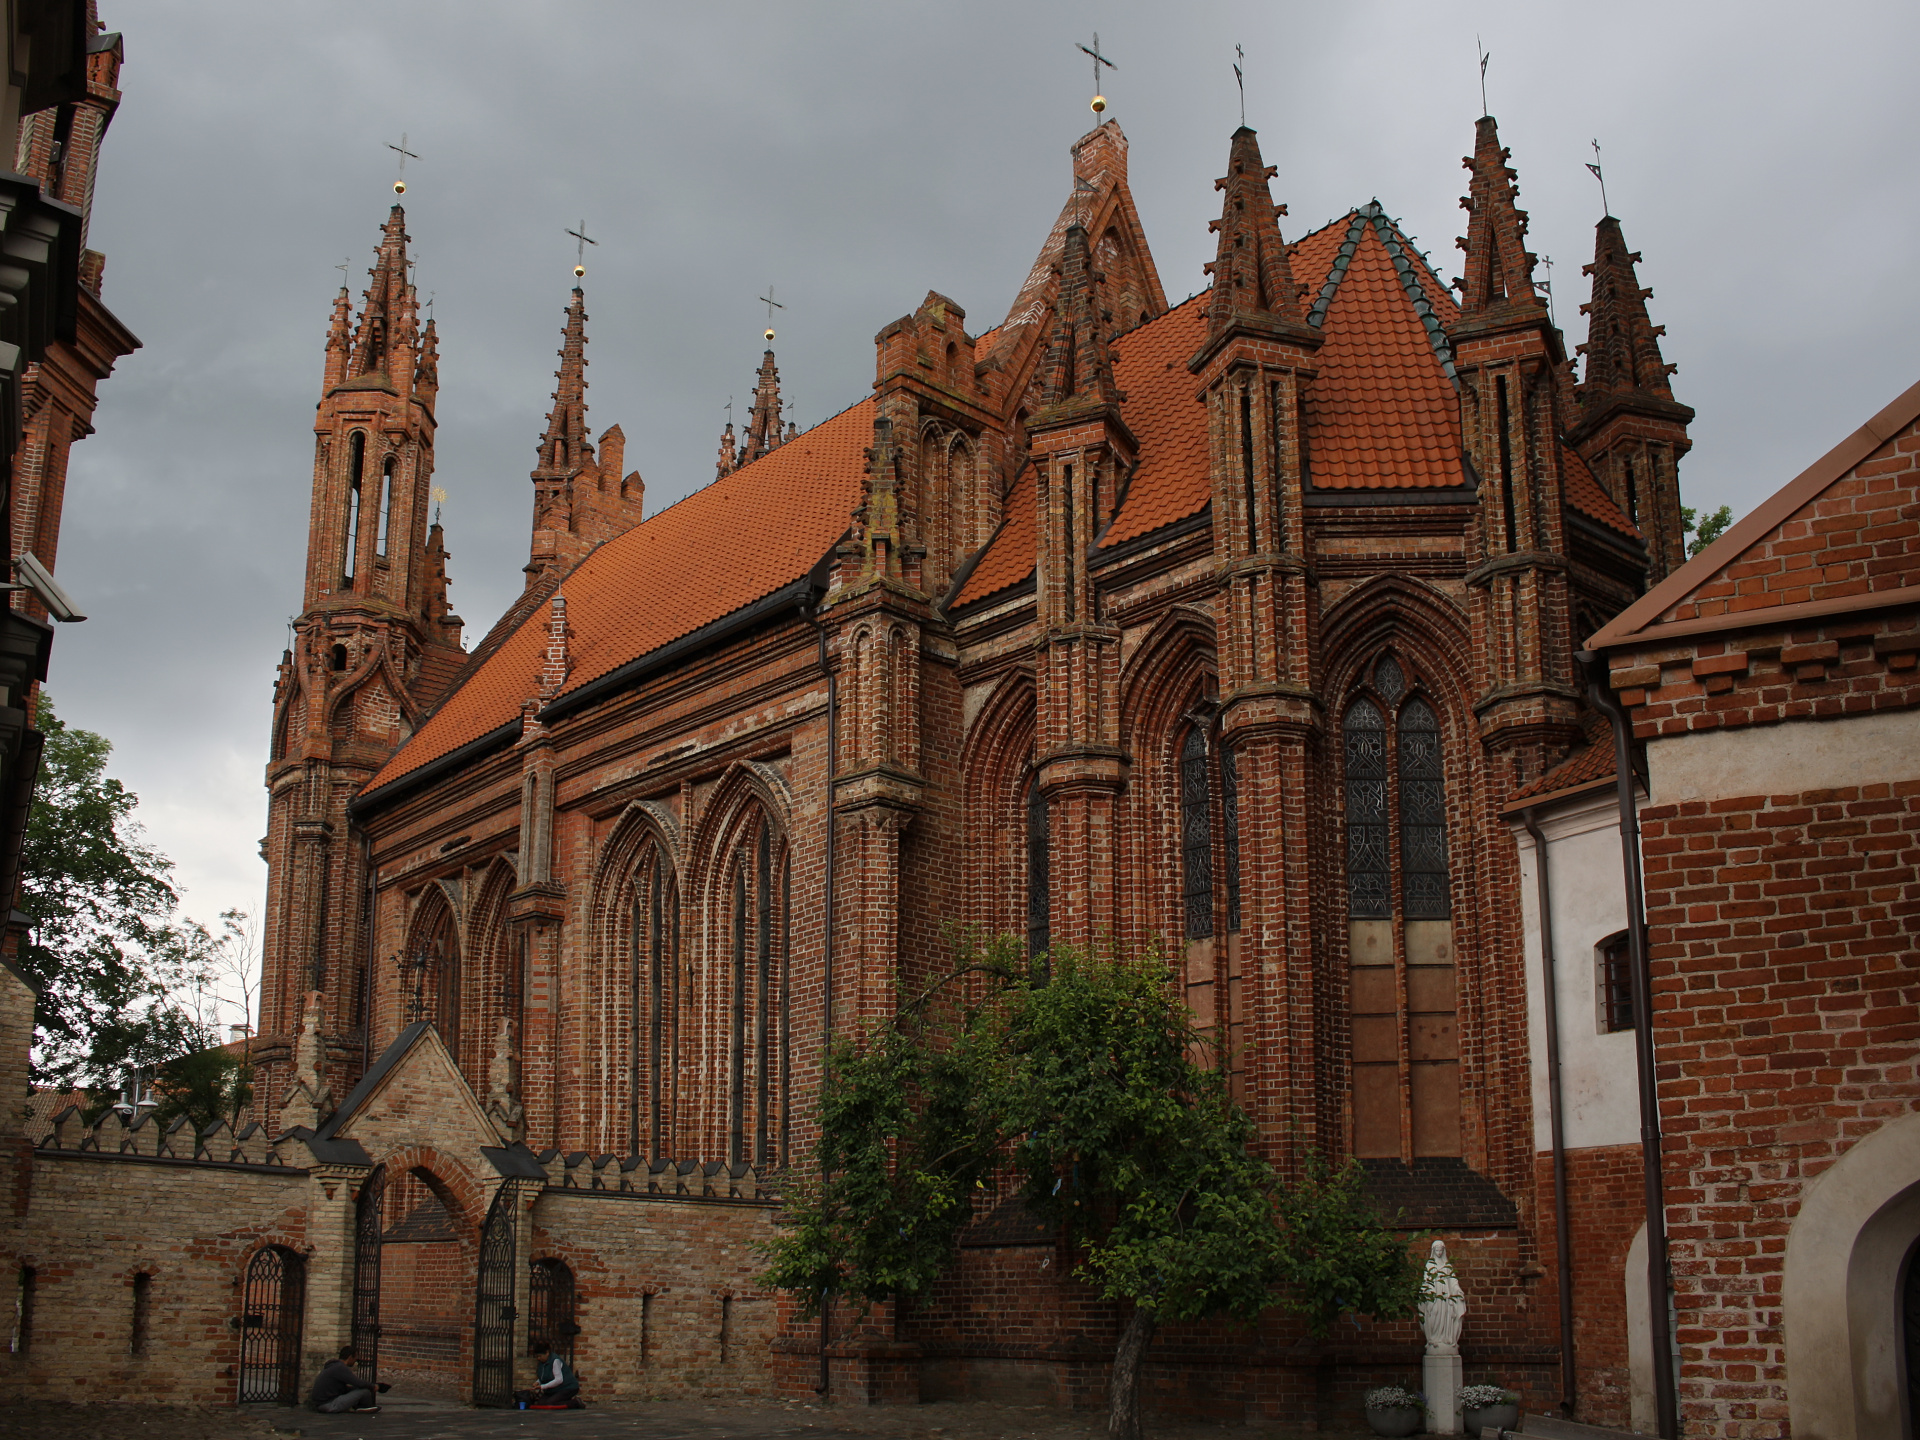 Šv. Onos bažnyčia - Kościół św. Anny (Podróże » Wilno » Kościoły i cerkwie)